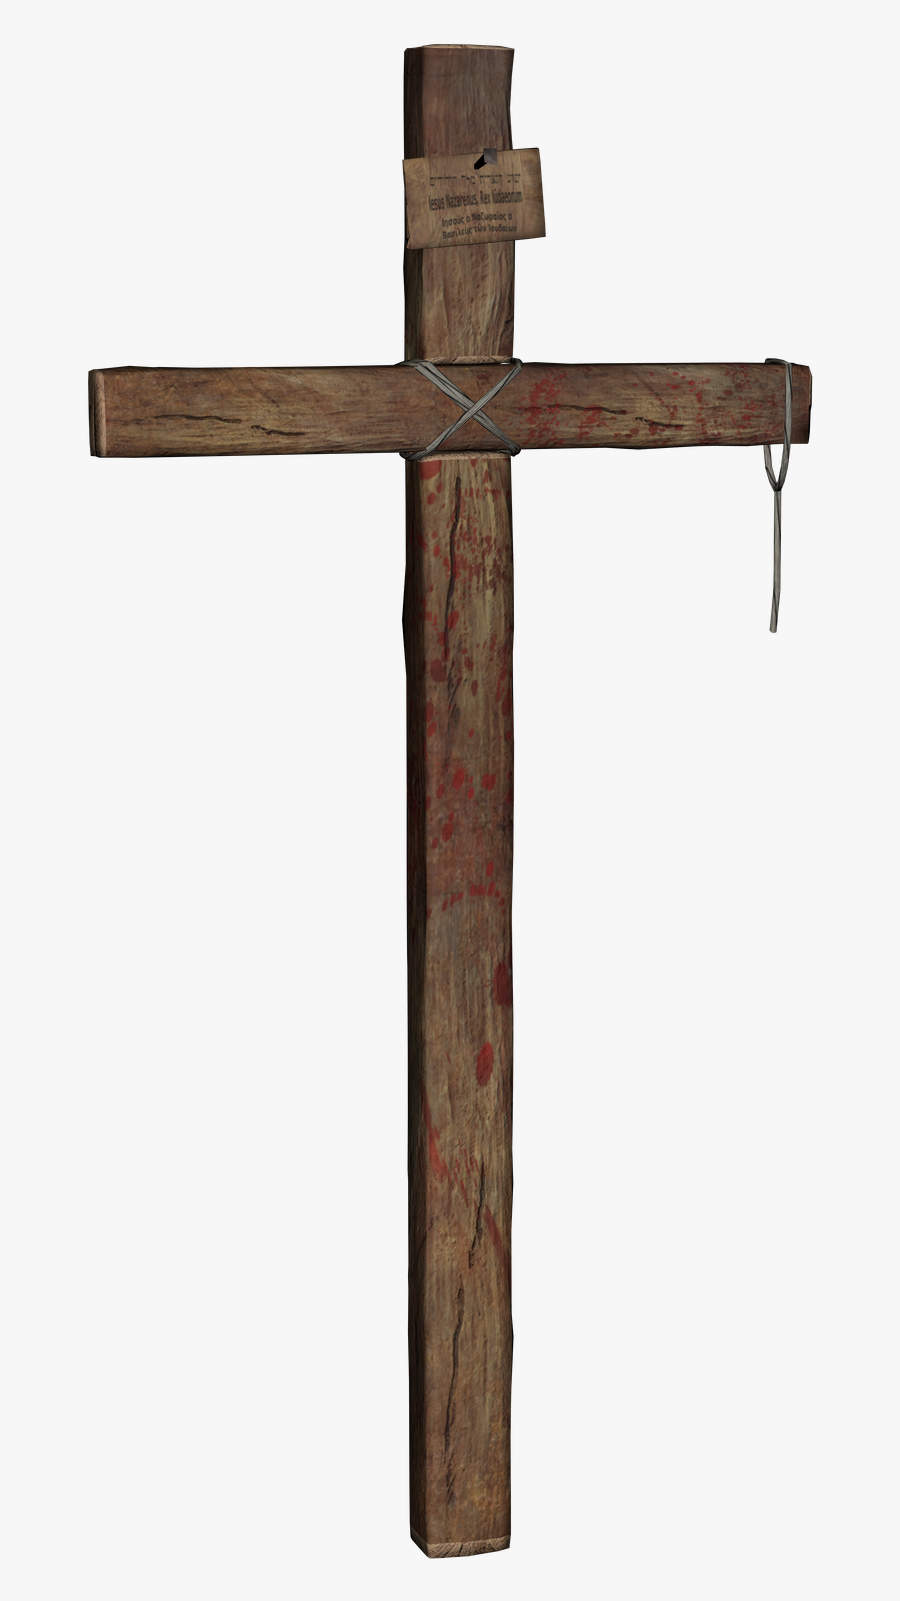 Wooden Cross - Transparent Wooden Cross Png, Transparent Clipart